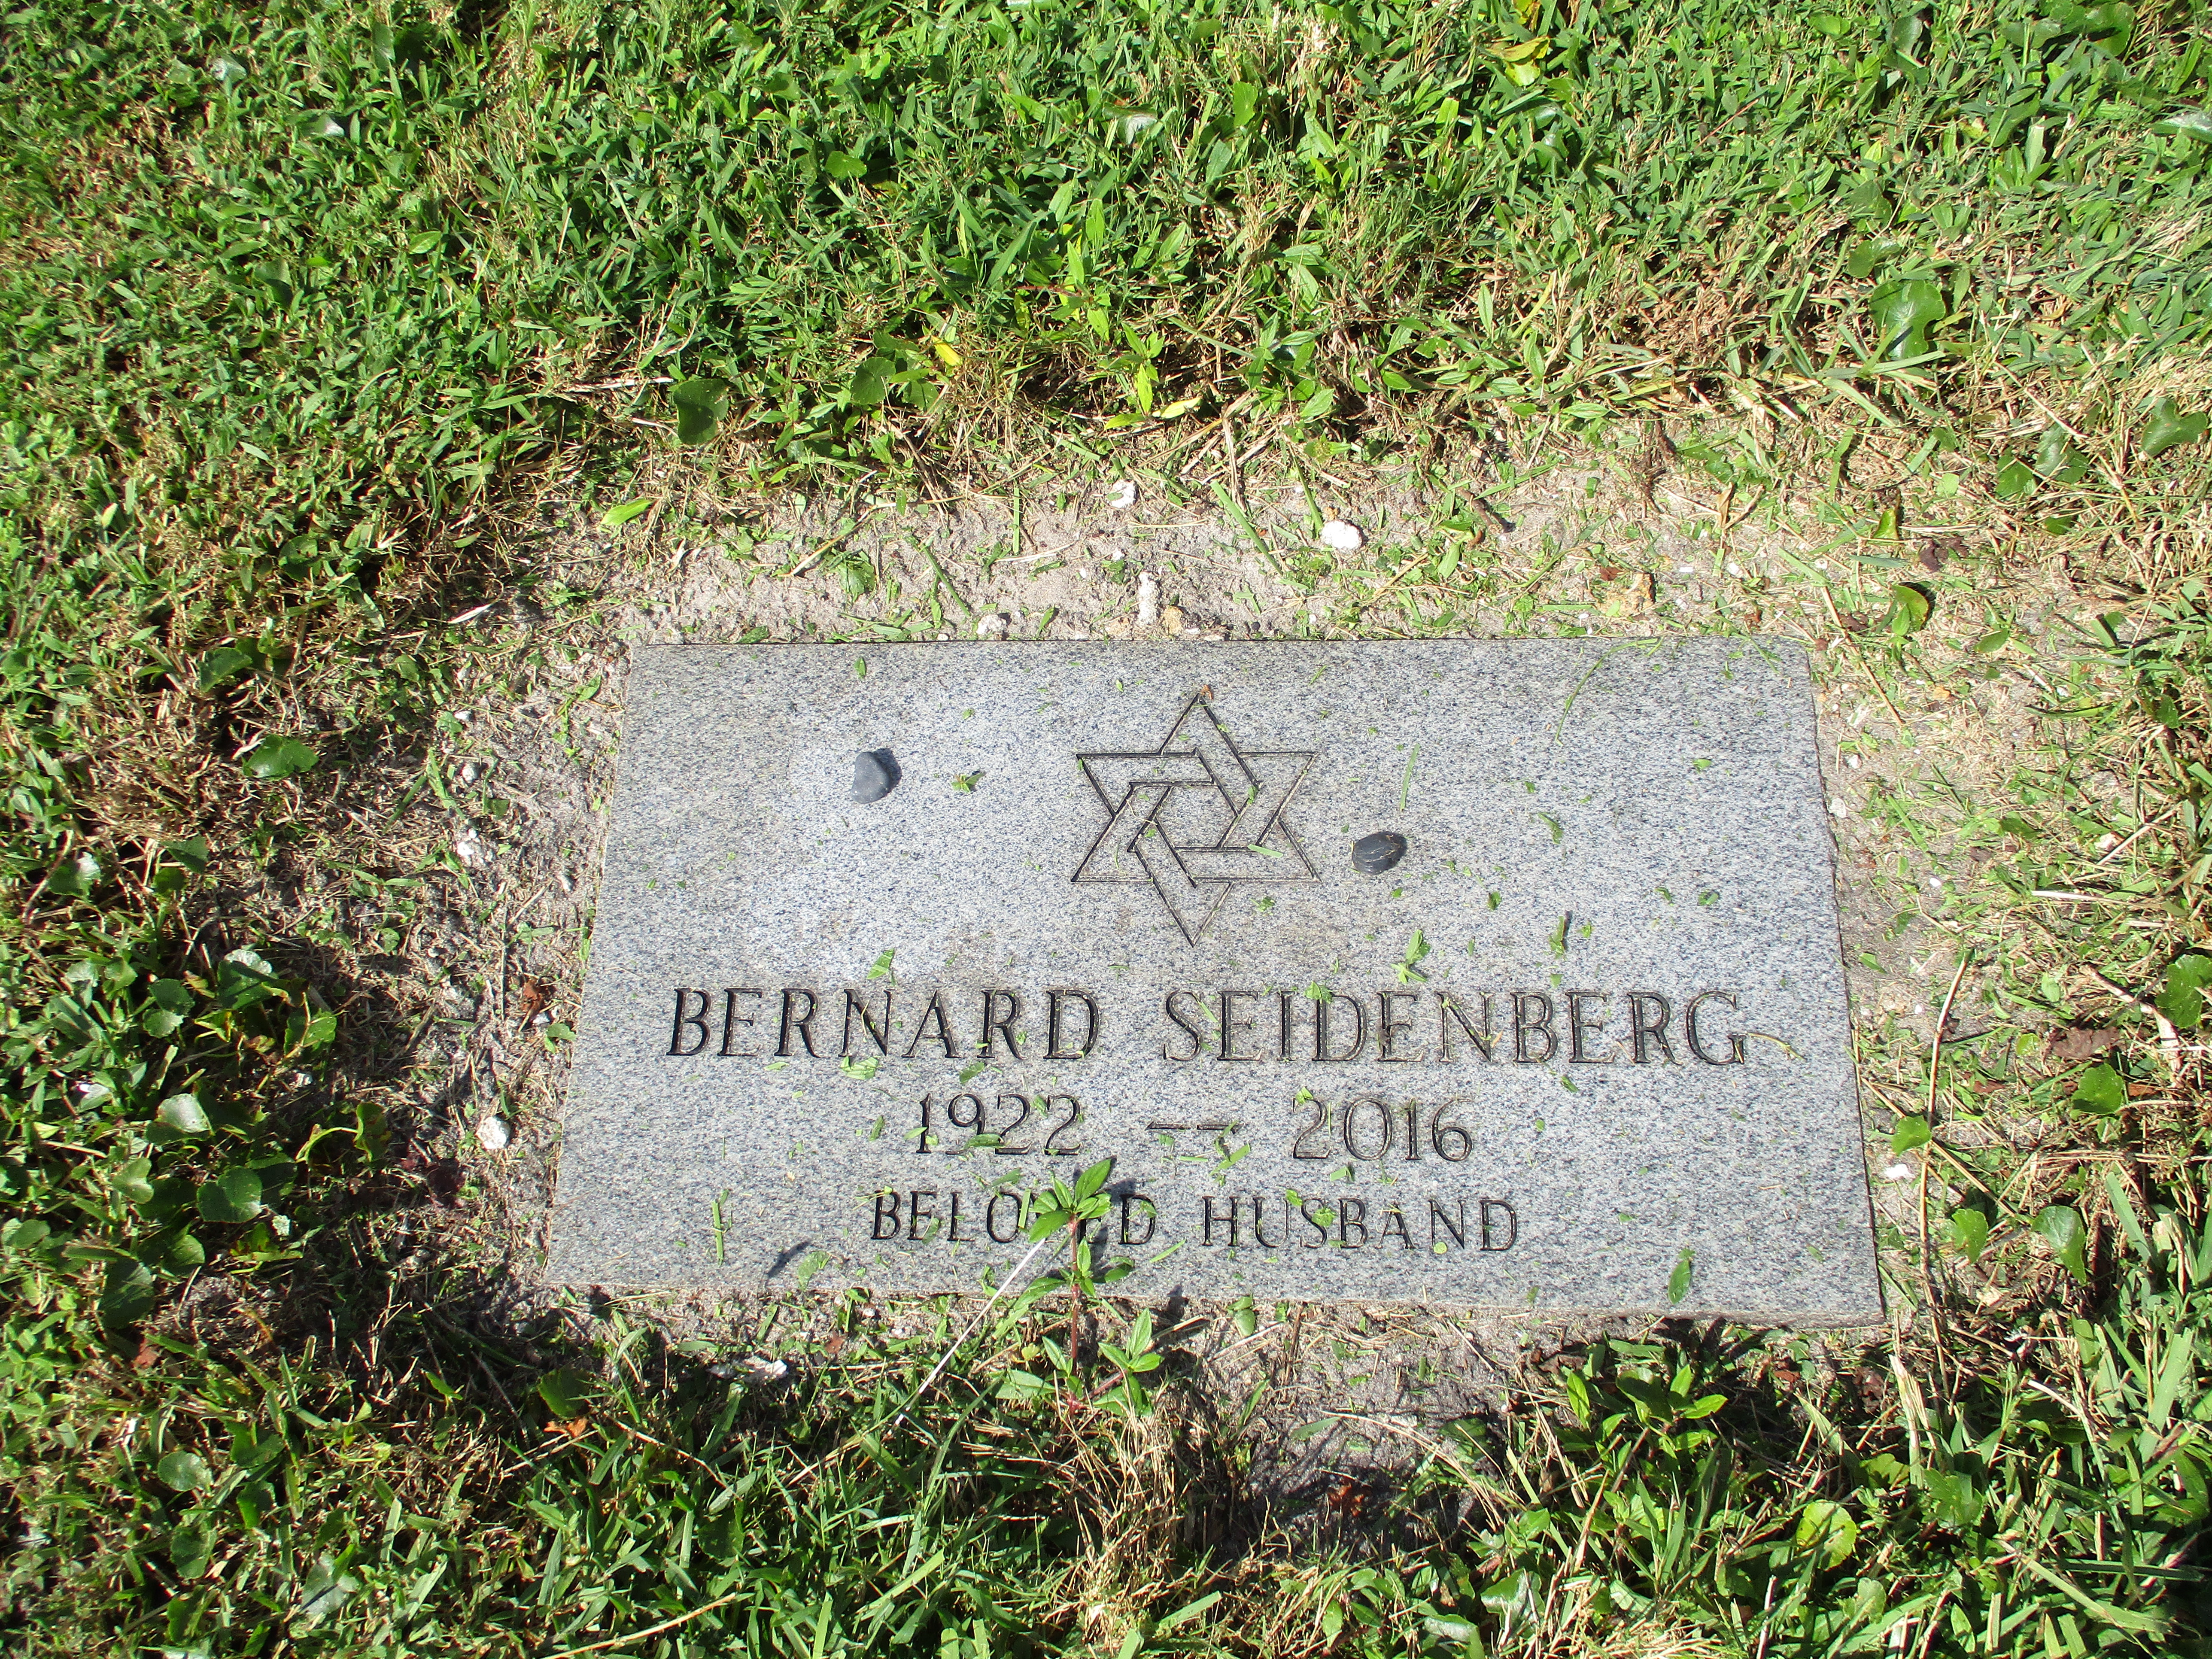 Bernard Seidenberg